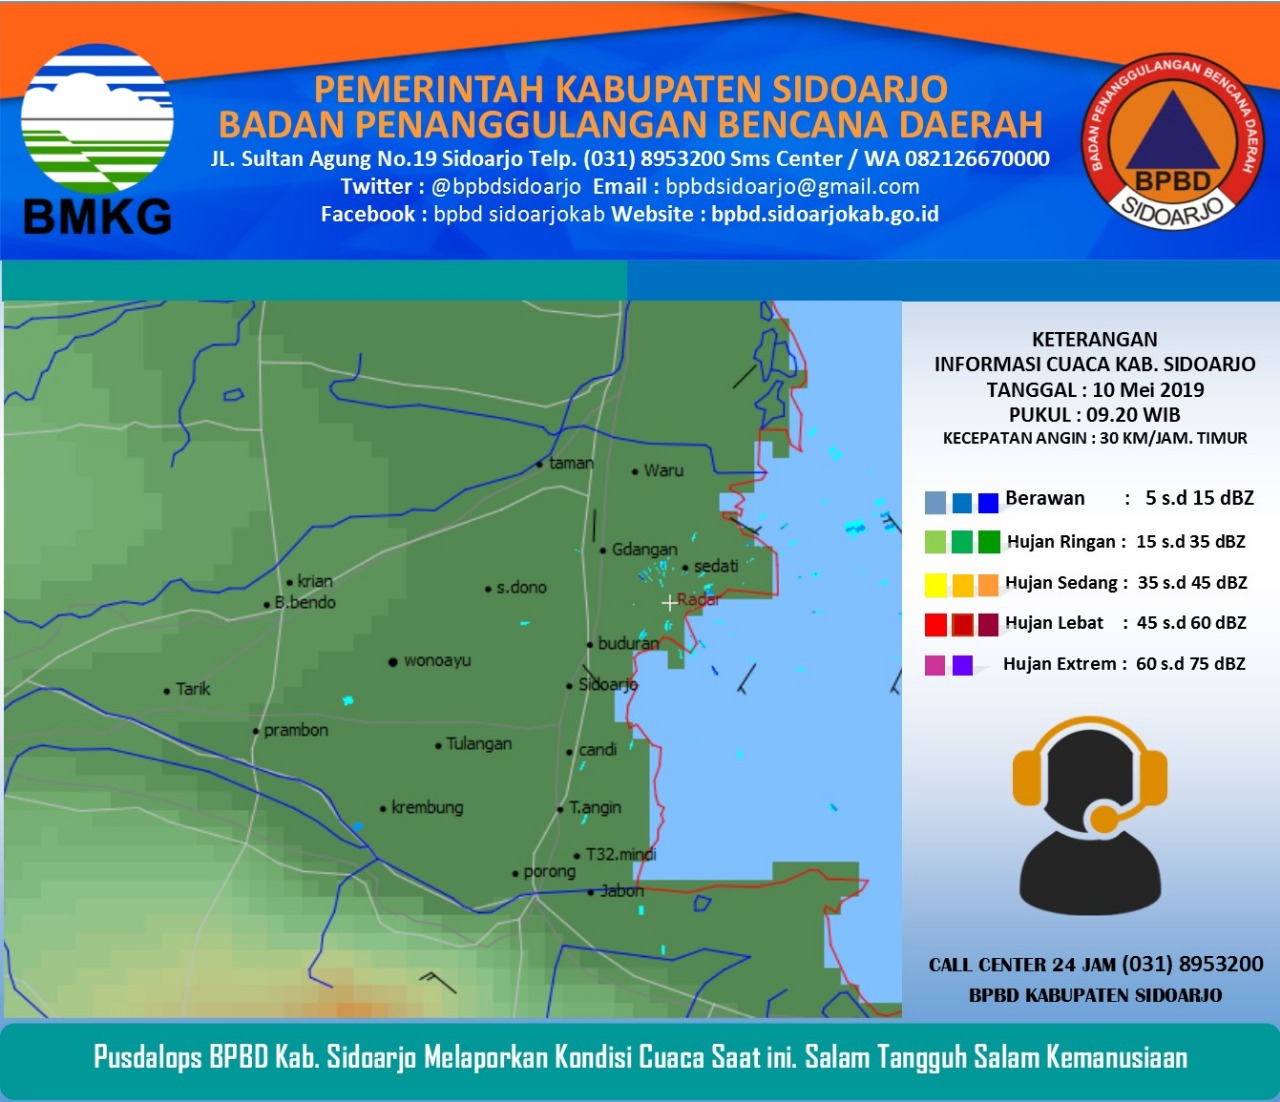 Pantauan Cuaca Wilayah Kabupaten Sidoarjo. (10/05/19) 